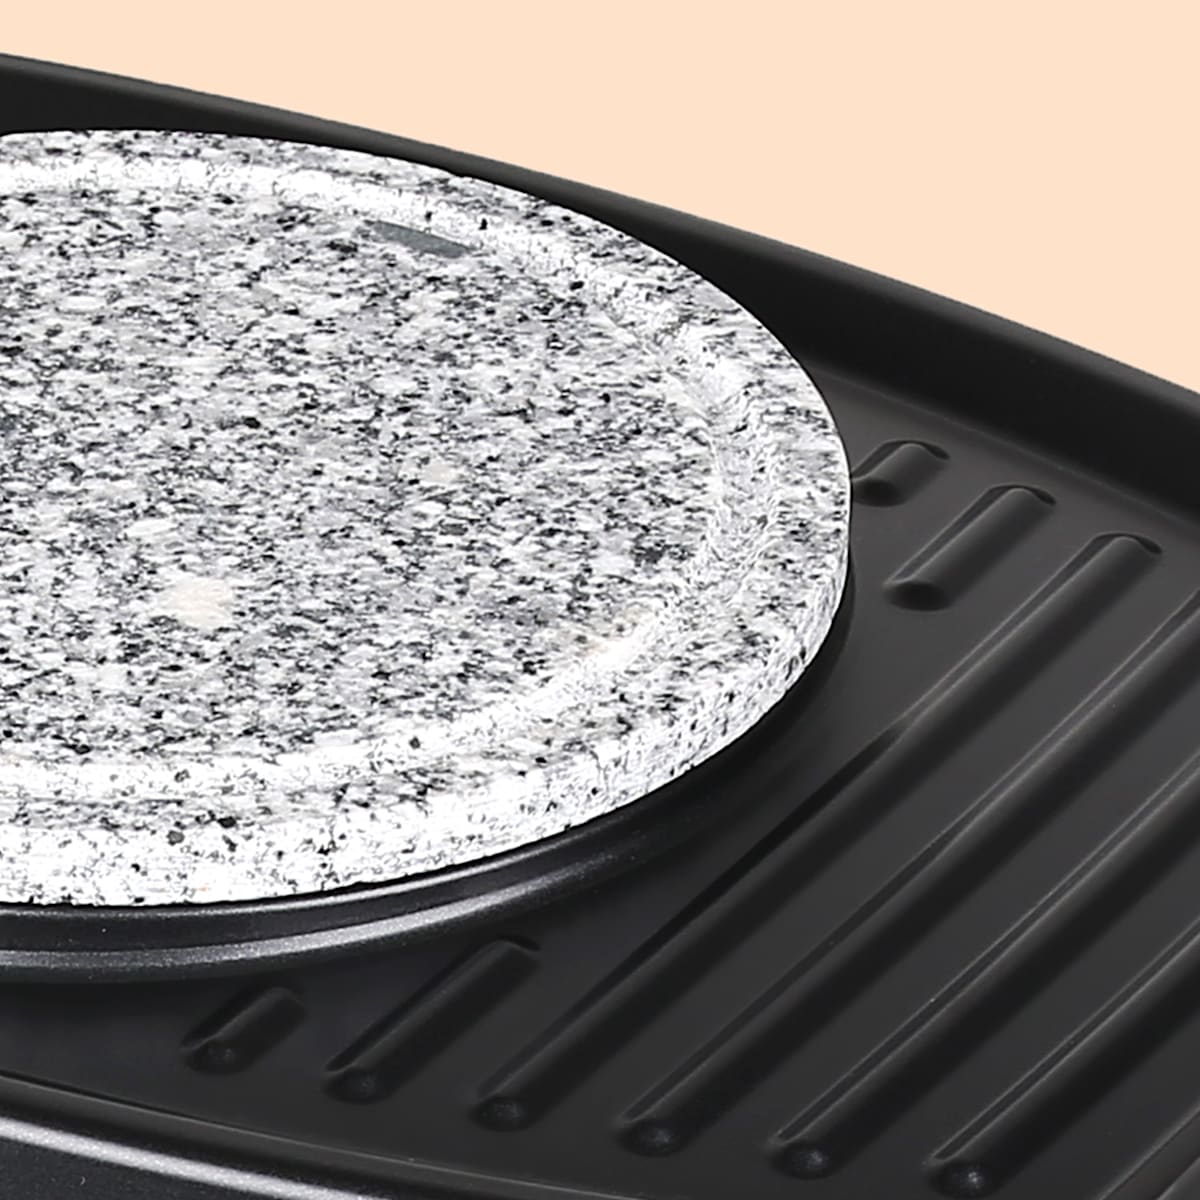 Entrecôte 2-in-1 grill raclette & fonduta, 1100 Watt, 2-in-1 grill:  metallo & piastra in pietra naturale, Elemento riscaldante in acciaio inox, 8 persone, 8 teglie da raclette